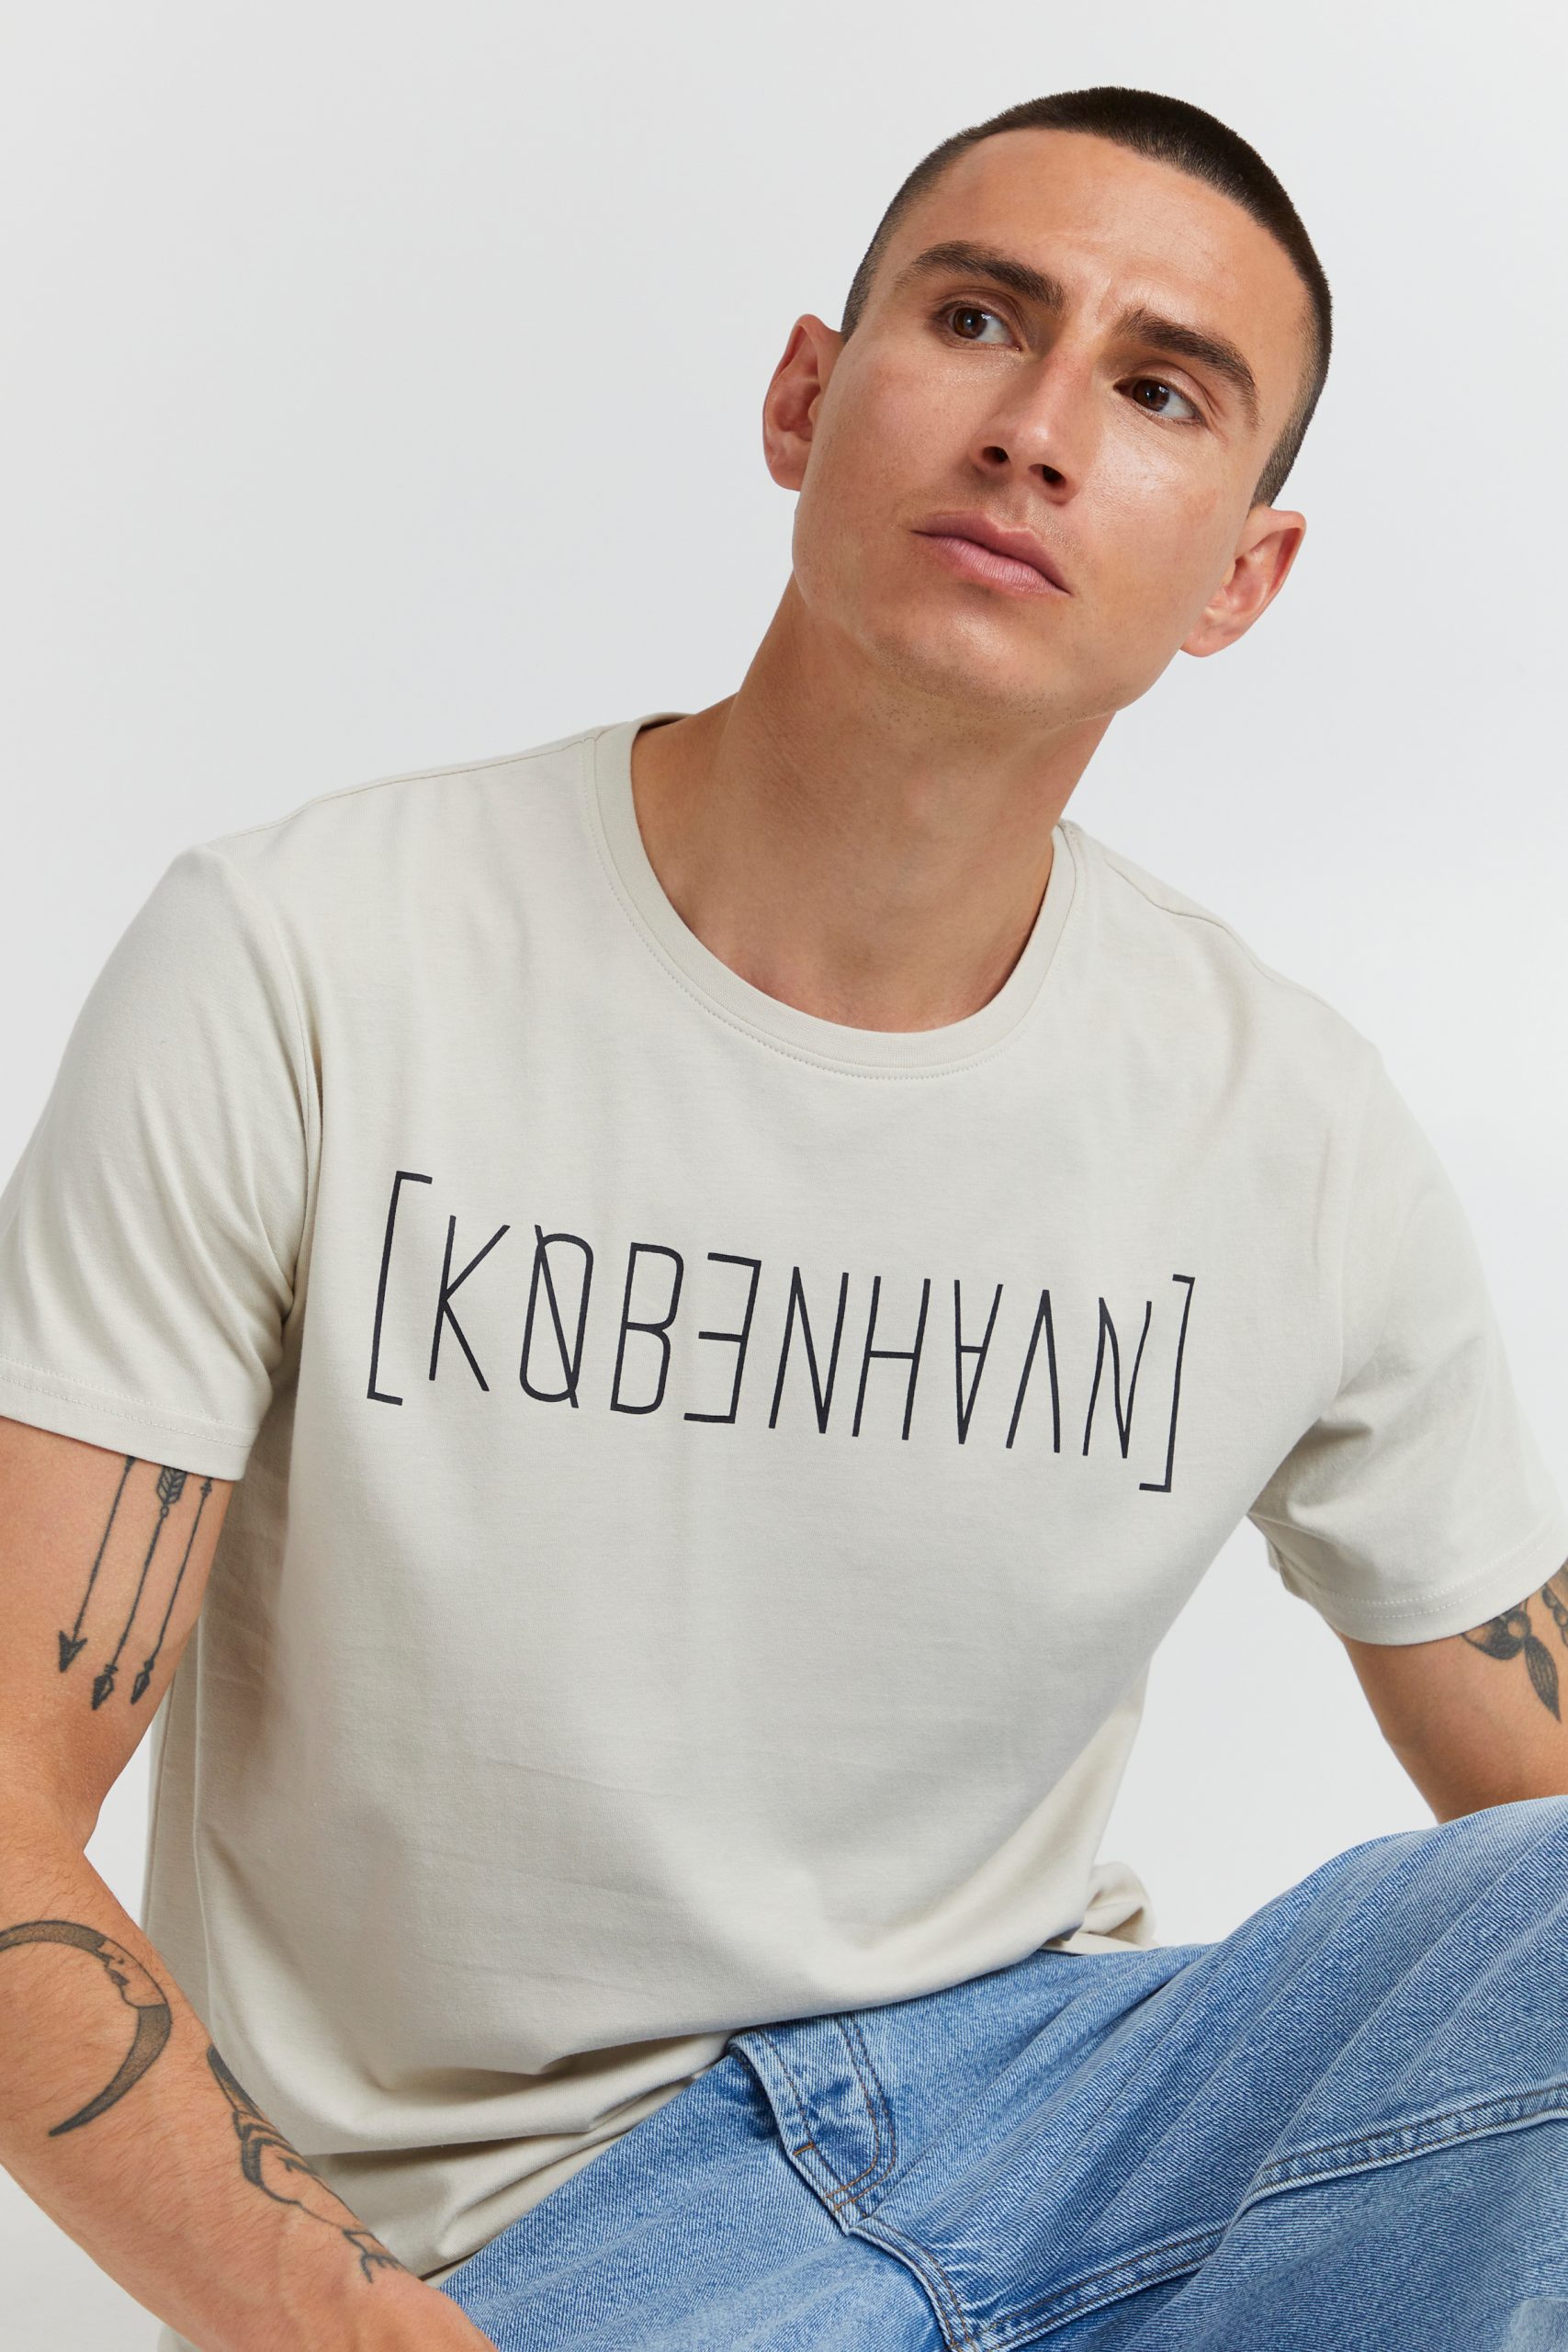 biologi Stuepige tyktflydende Solid København T-Shirt - Fashion Outlet